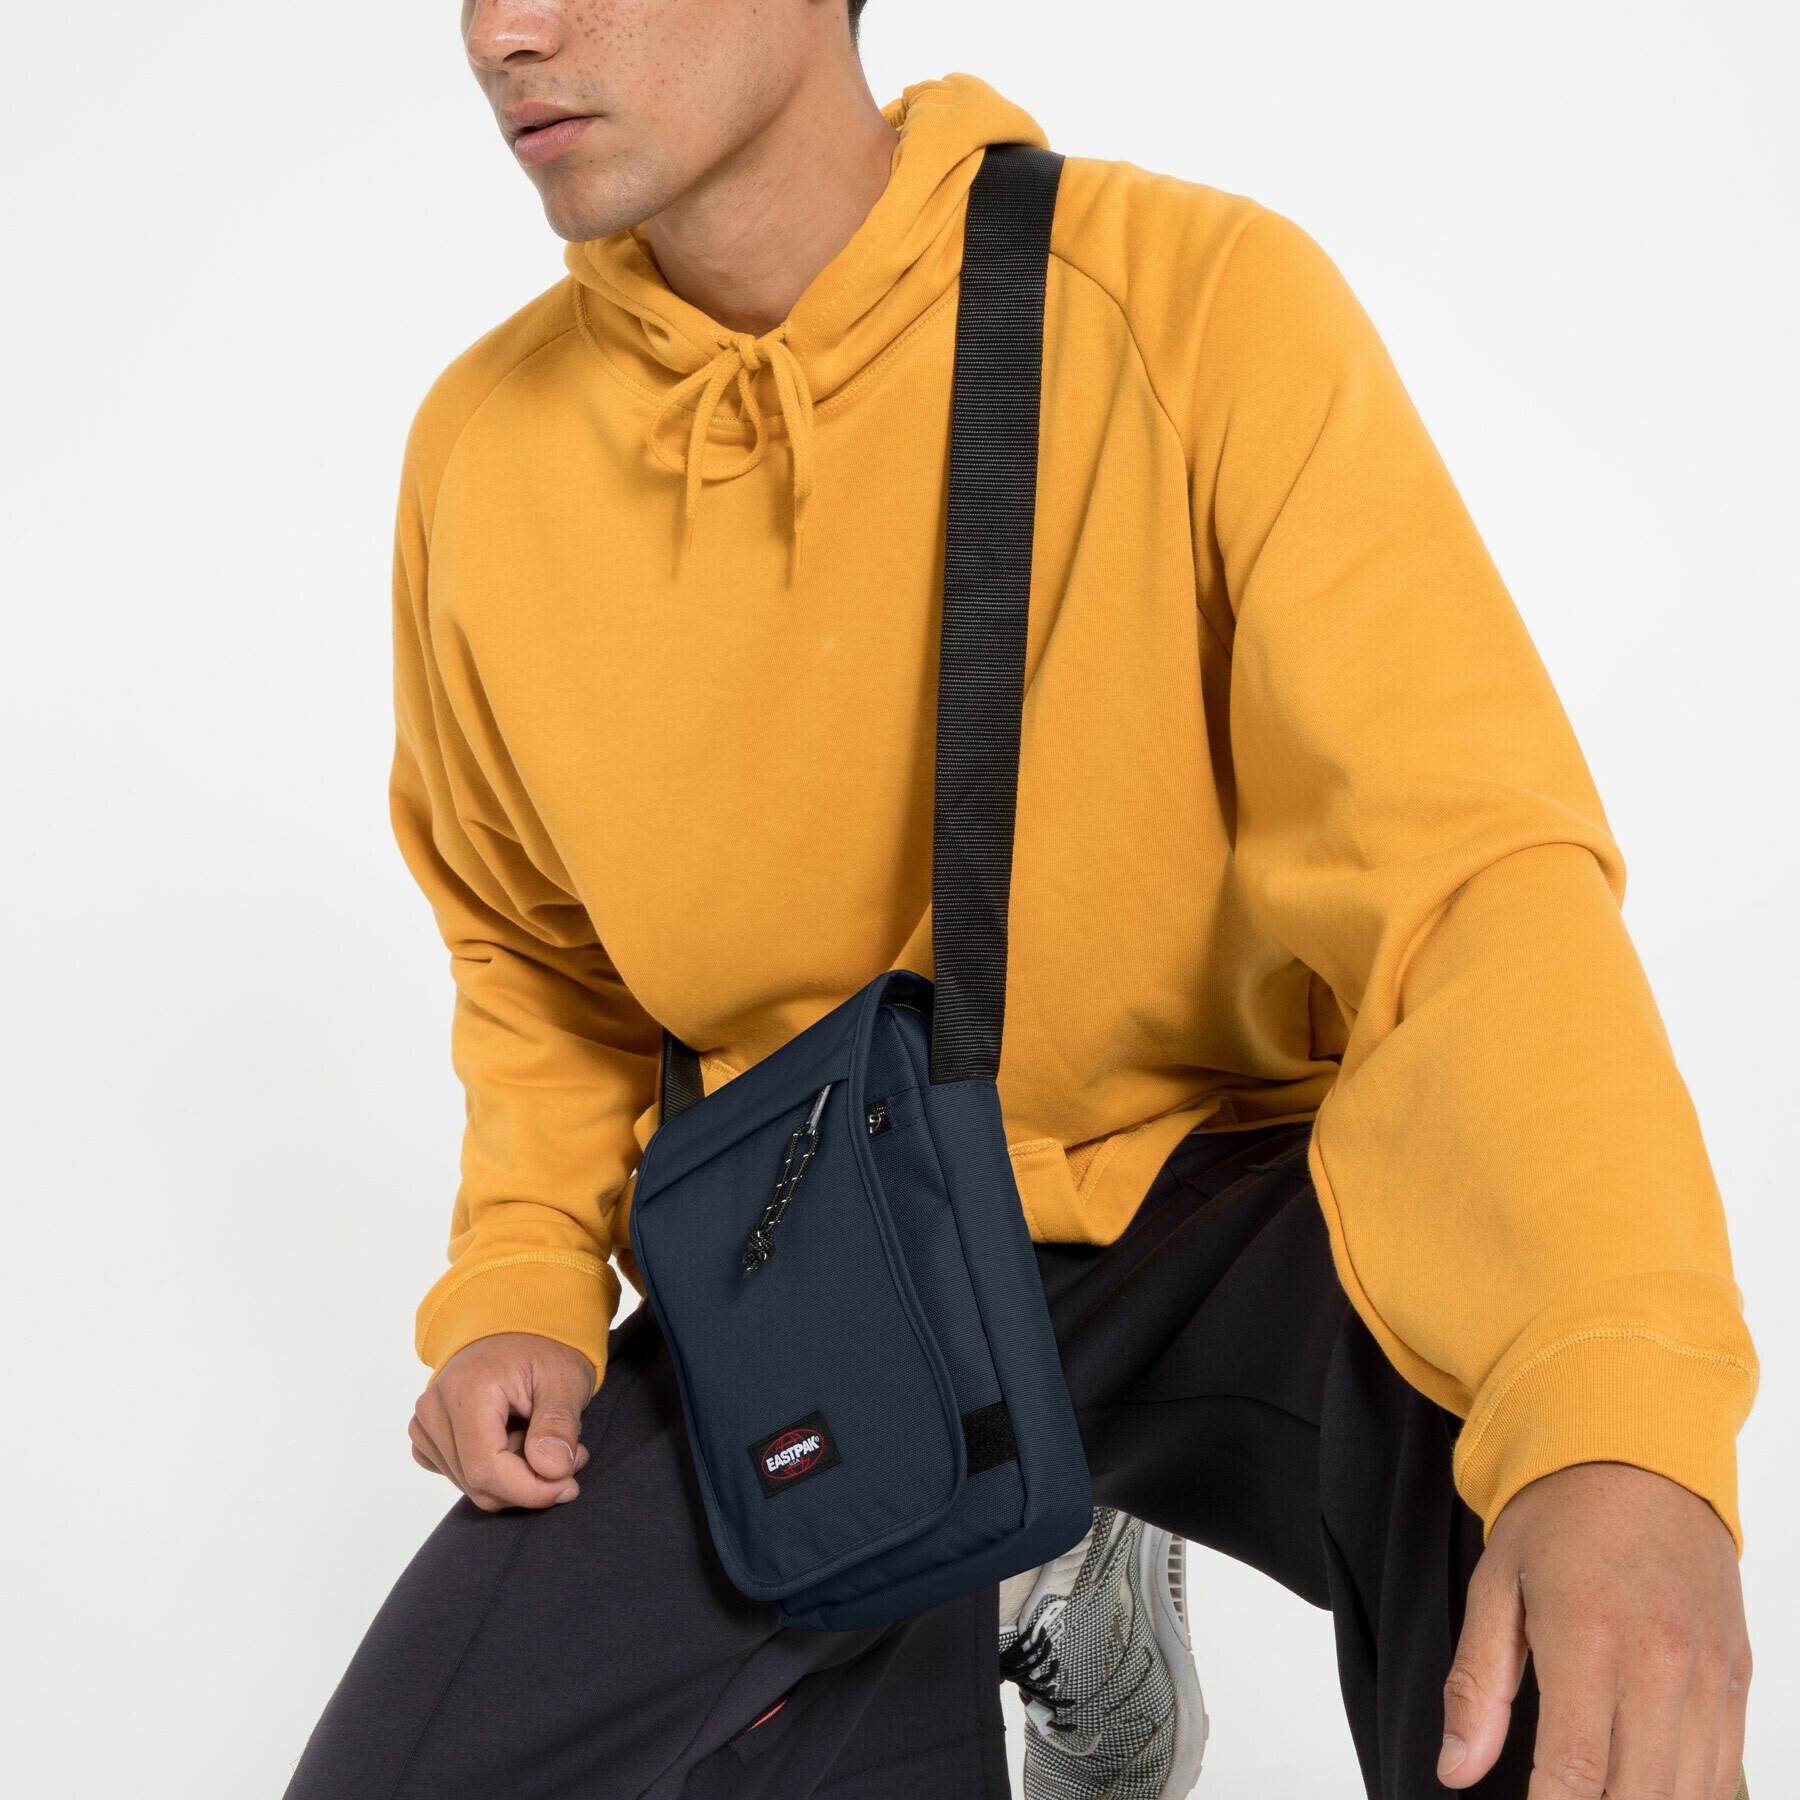 Shoulder bag Eastpak Flex